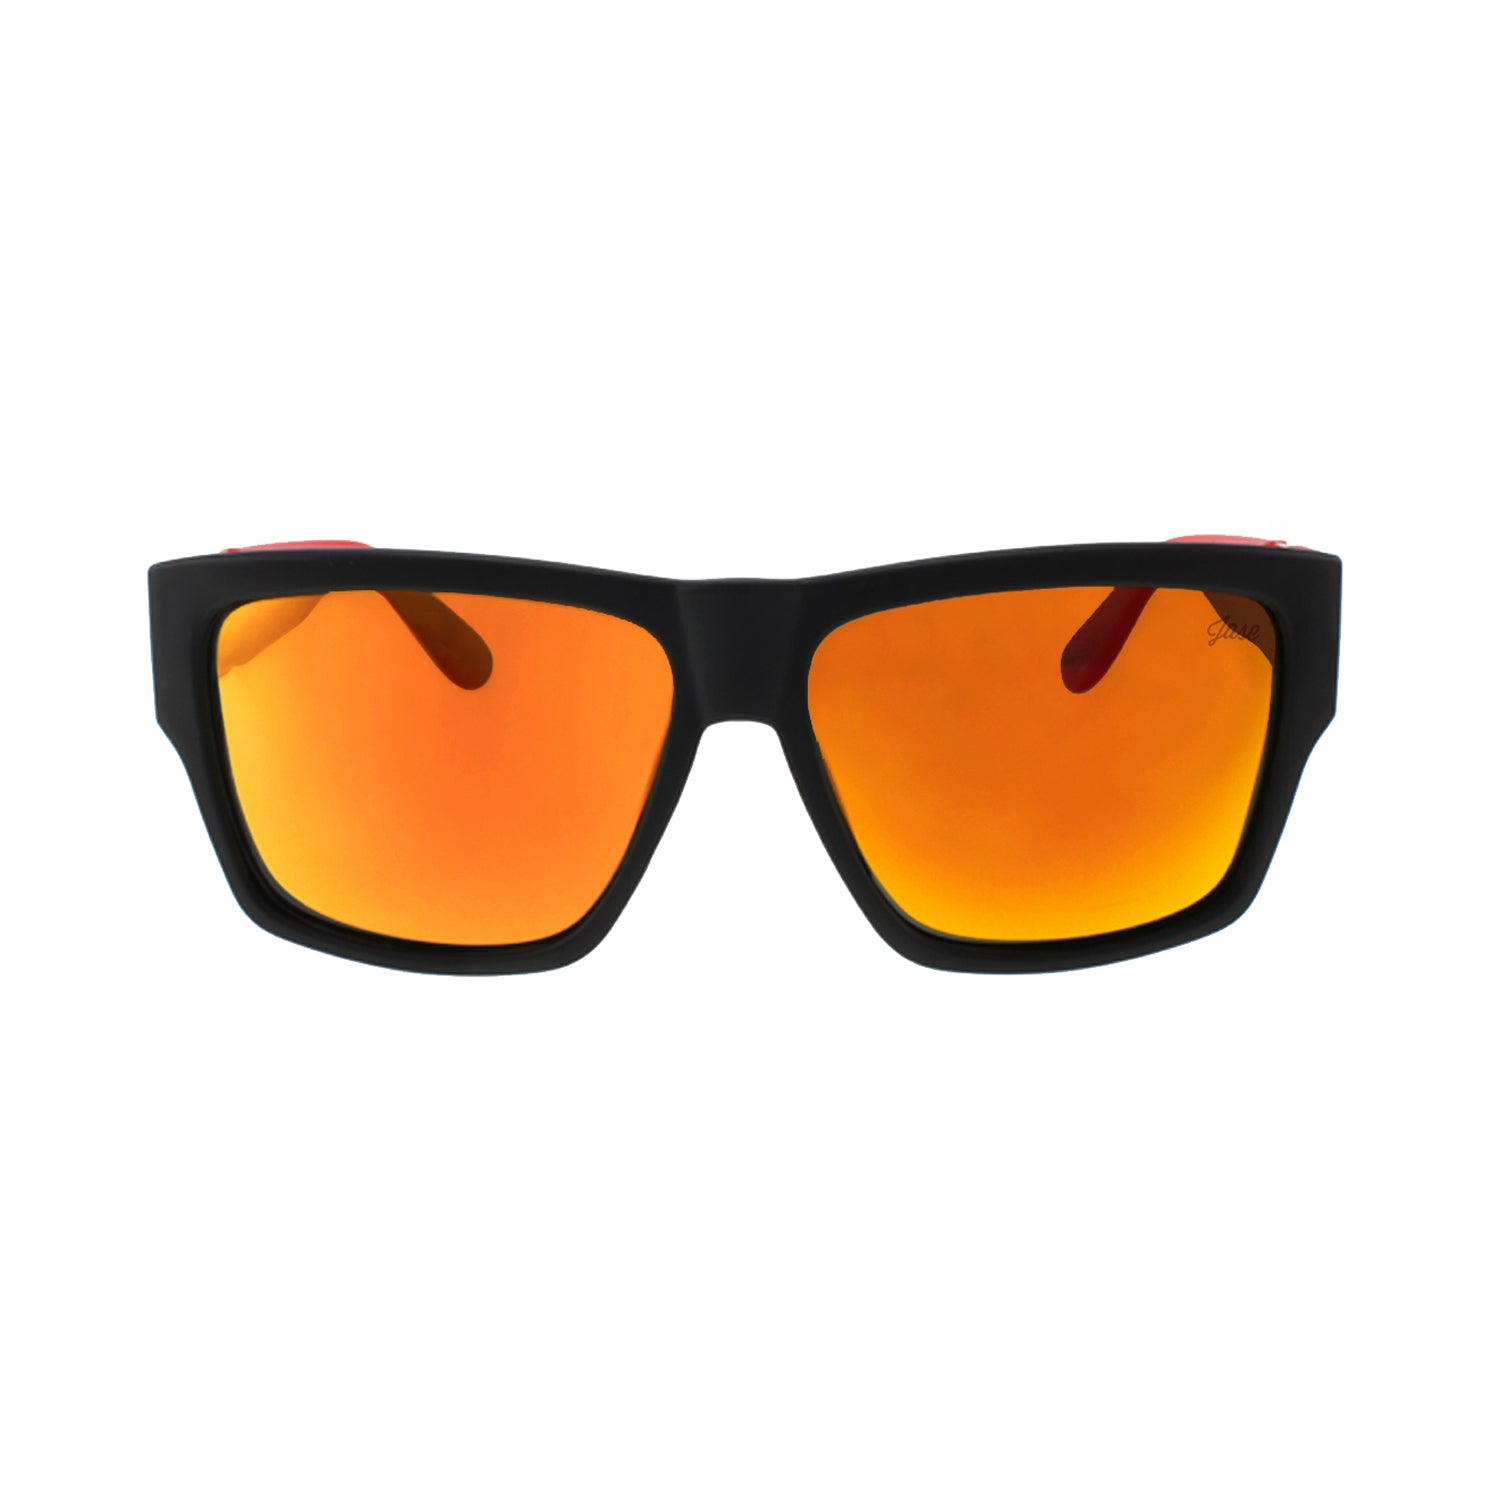 نظارات Jase New York Carter الشمسية باللون الأحمر